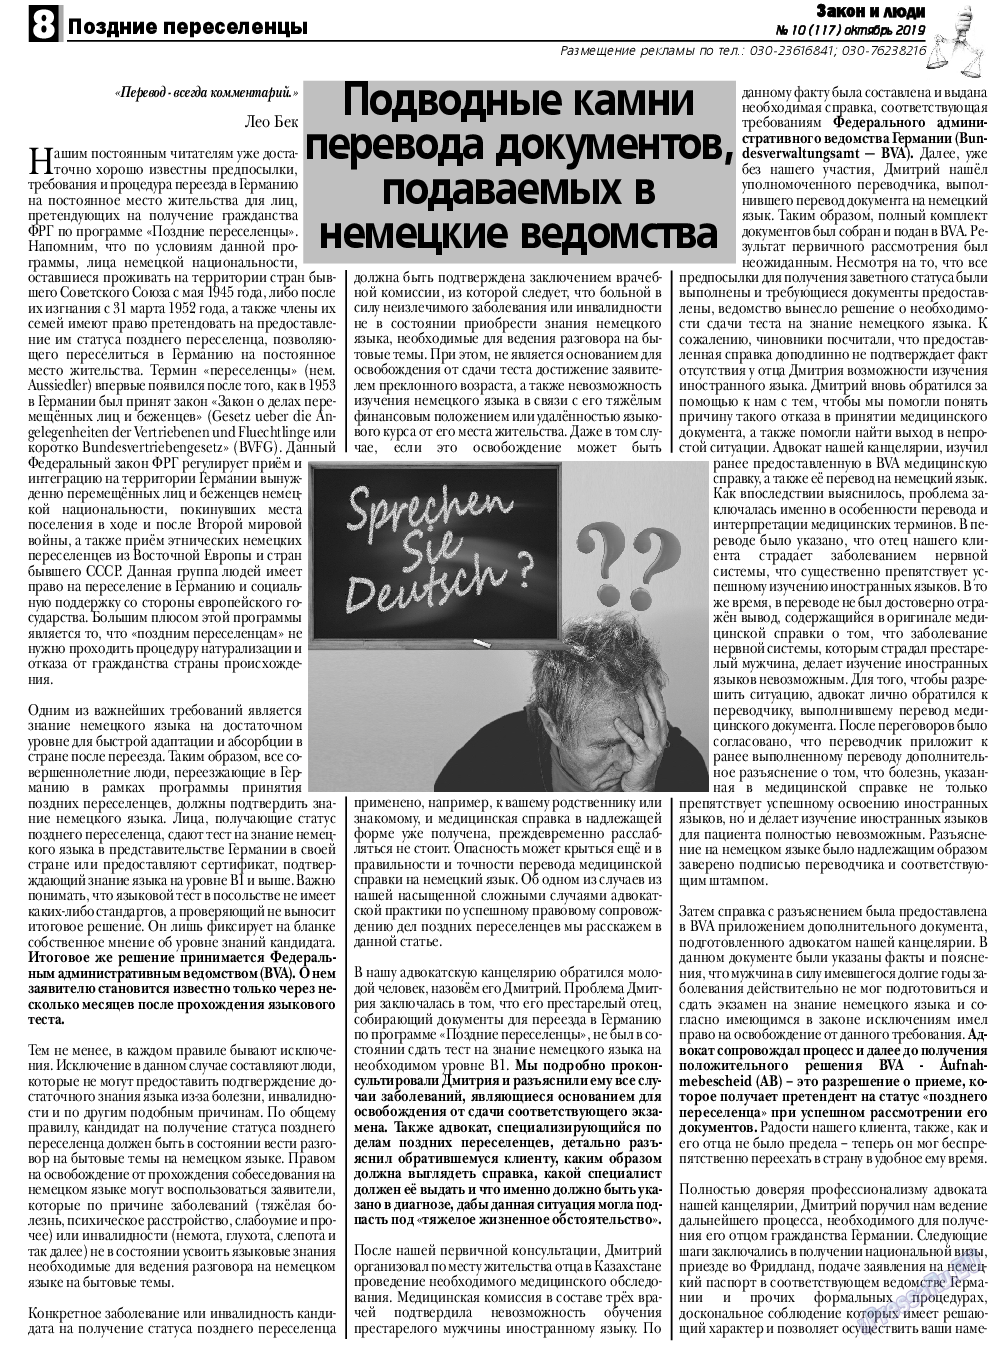 Закон и люди, газета. 2019 №10 стр.8